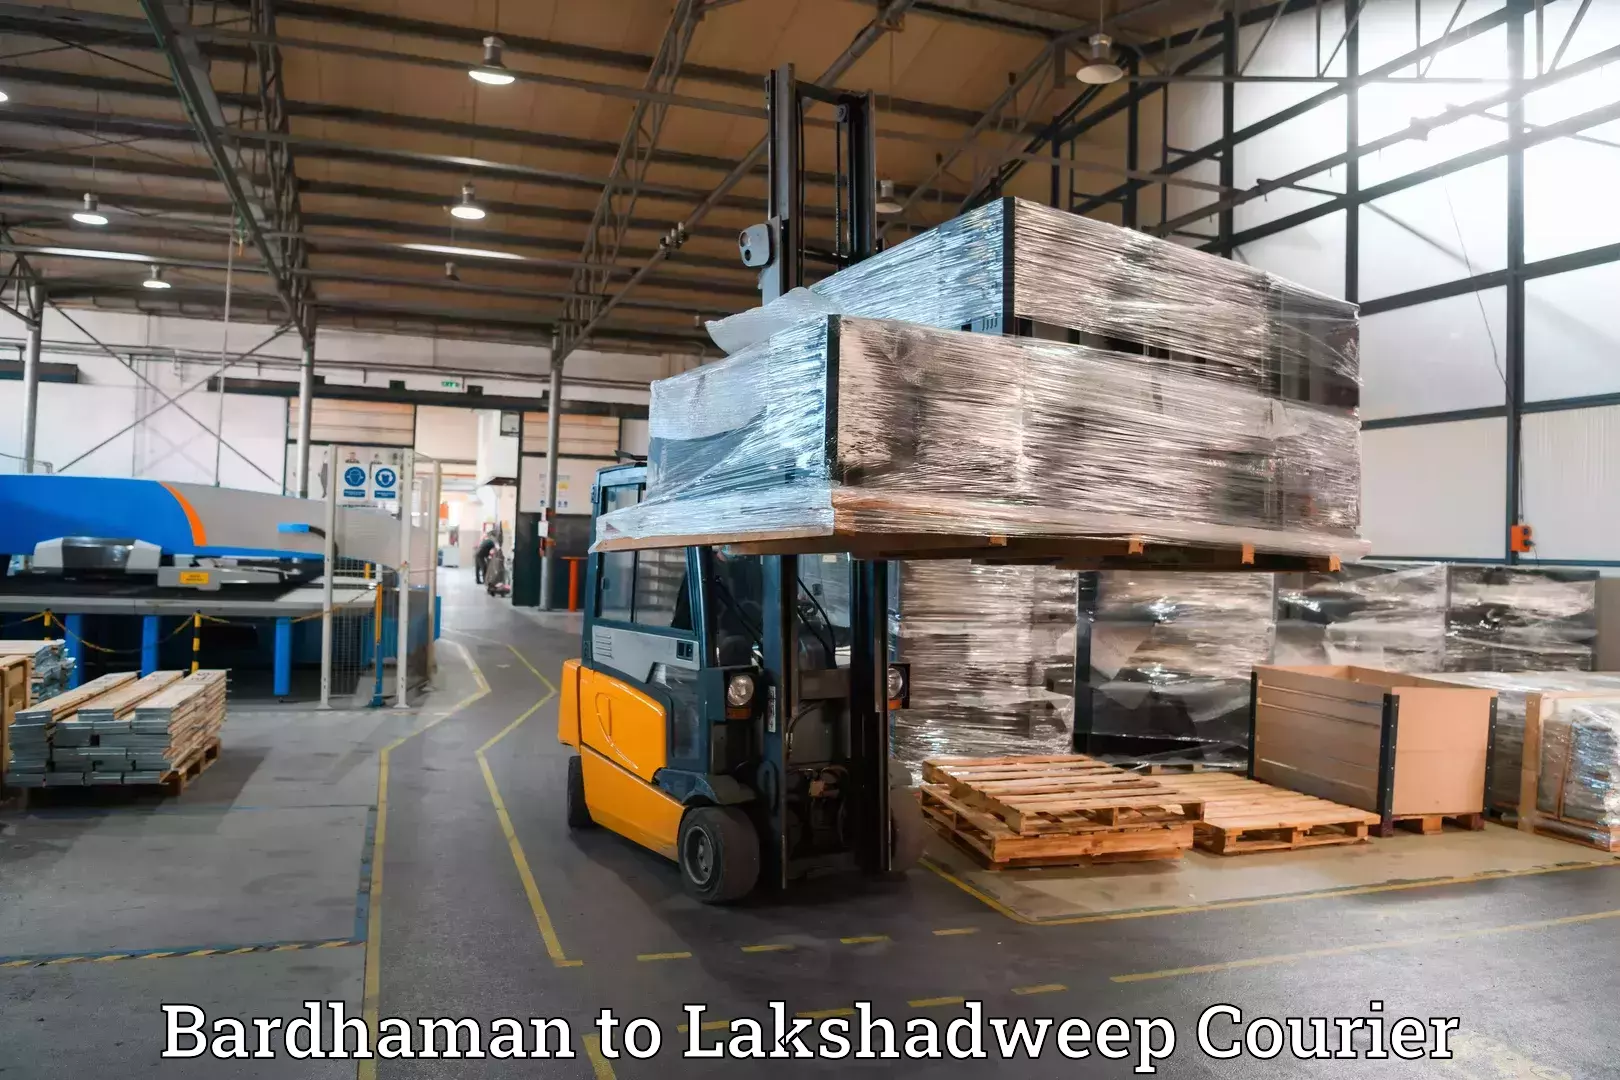 Baggage transport management Bardhaman to Lakshadweep